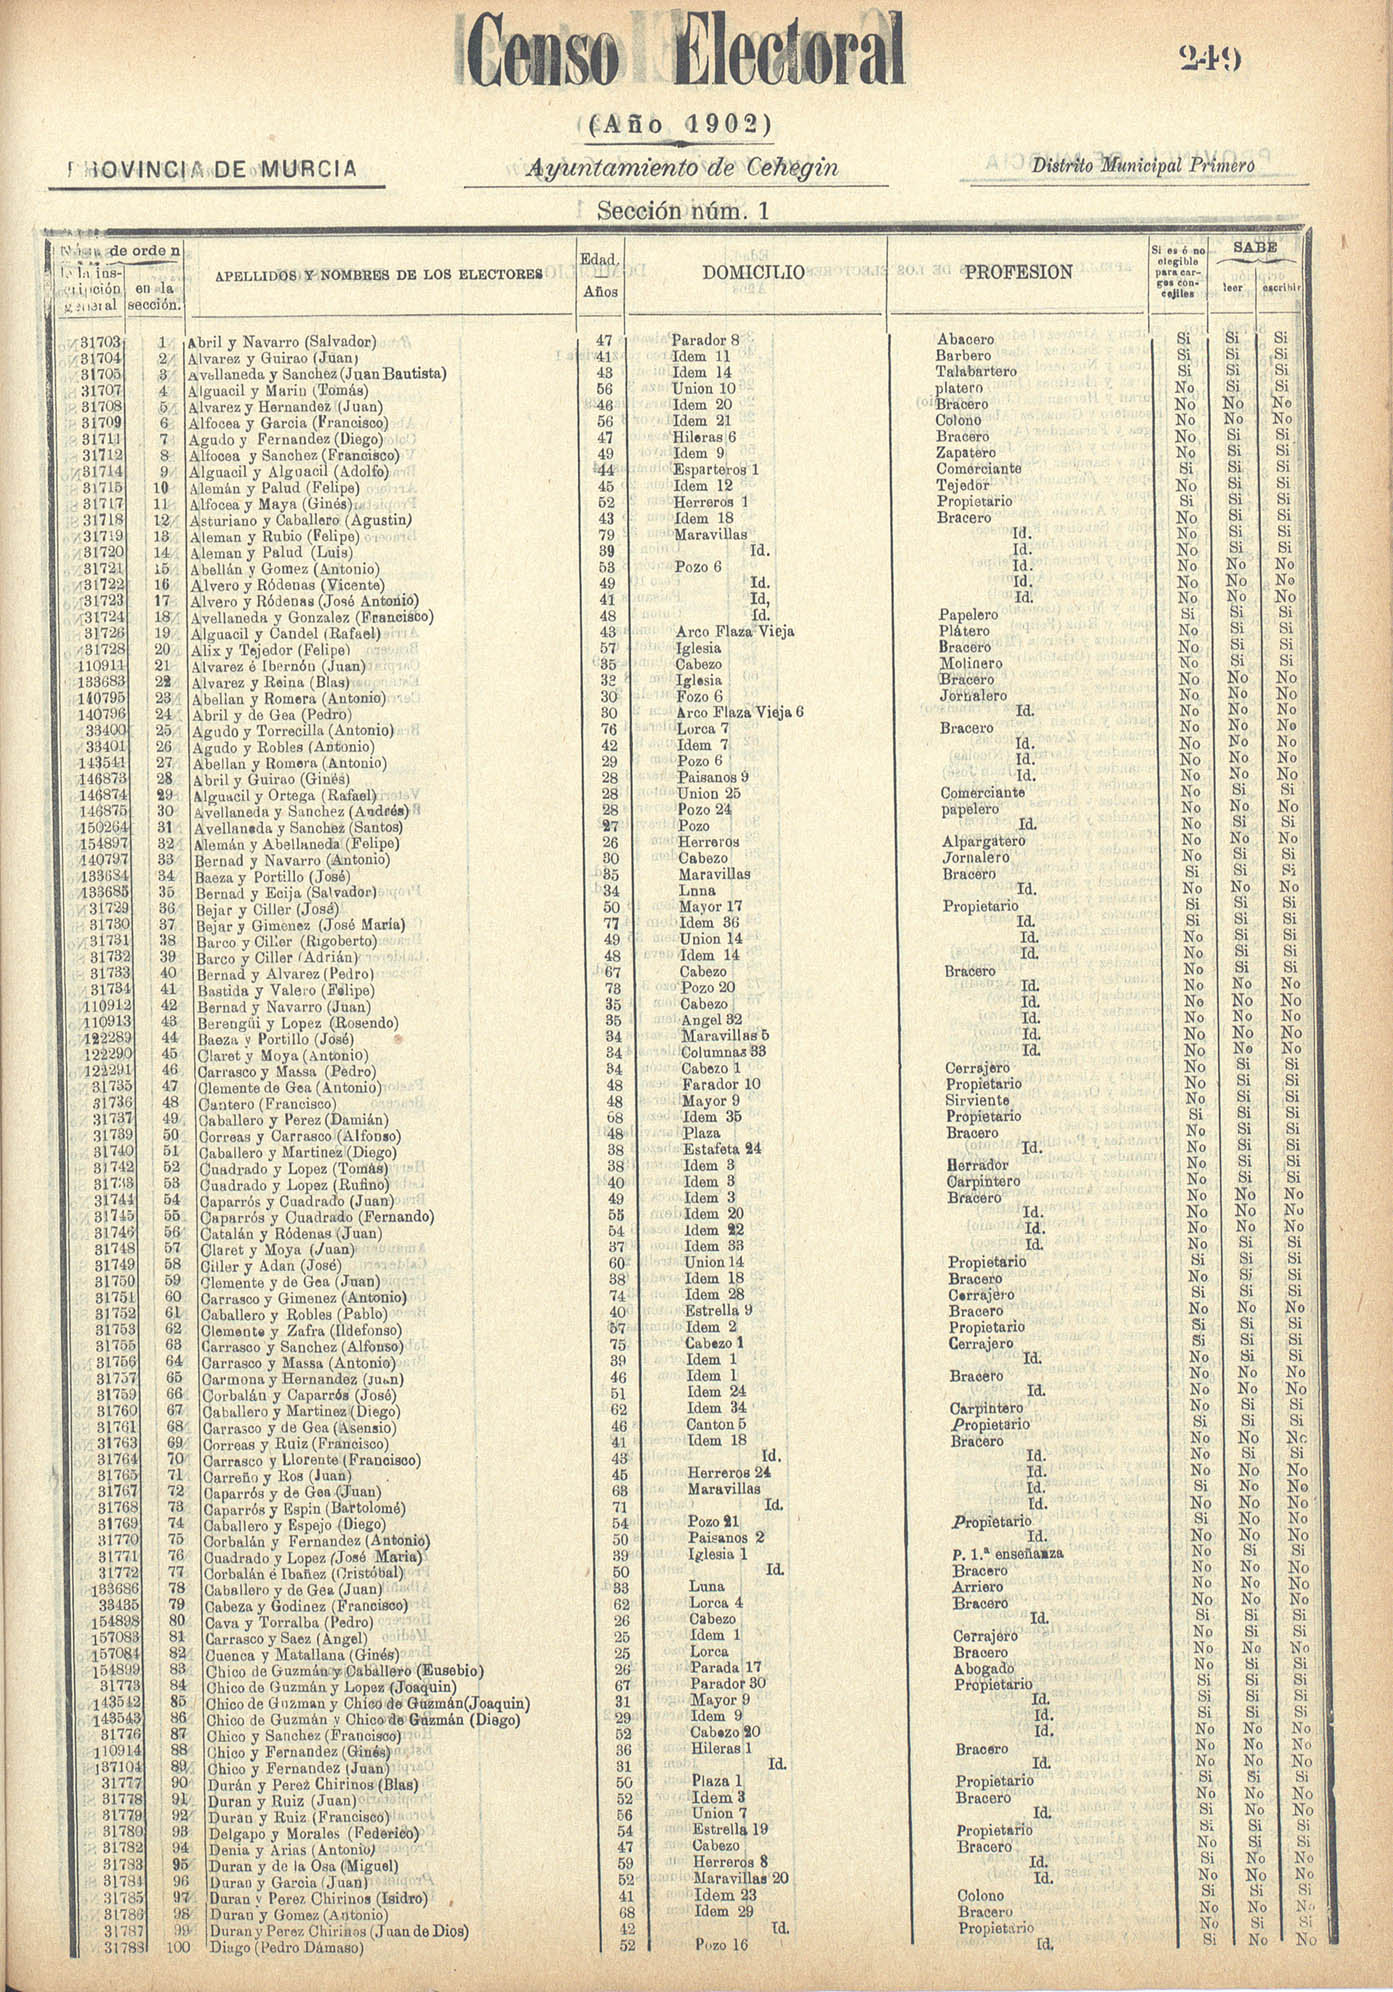 Censo electoral provincial de 1902: Cehegin.